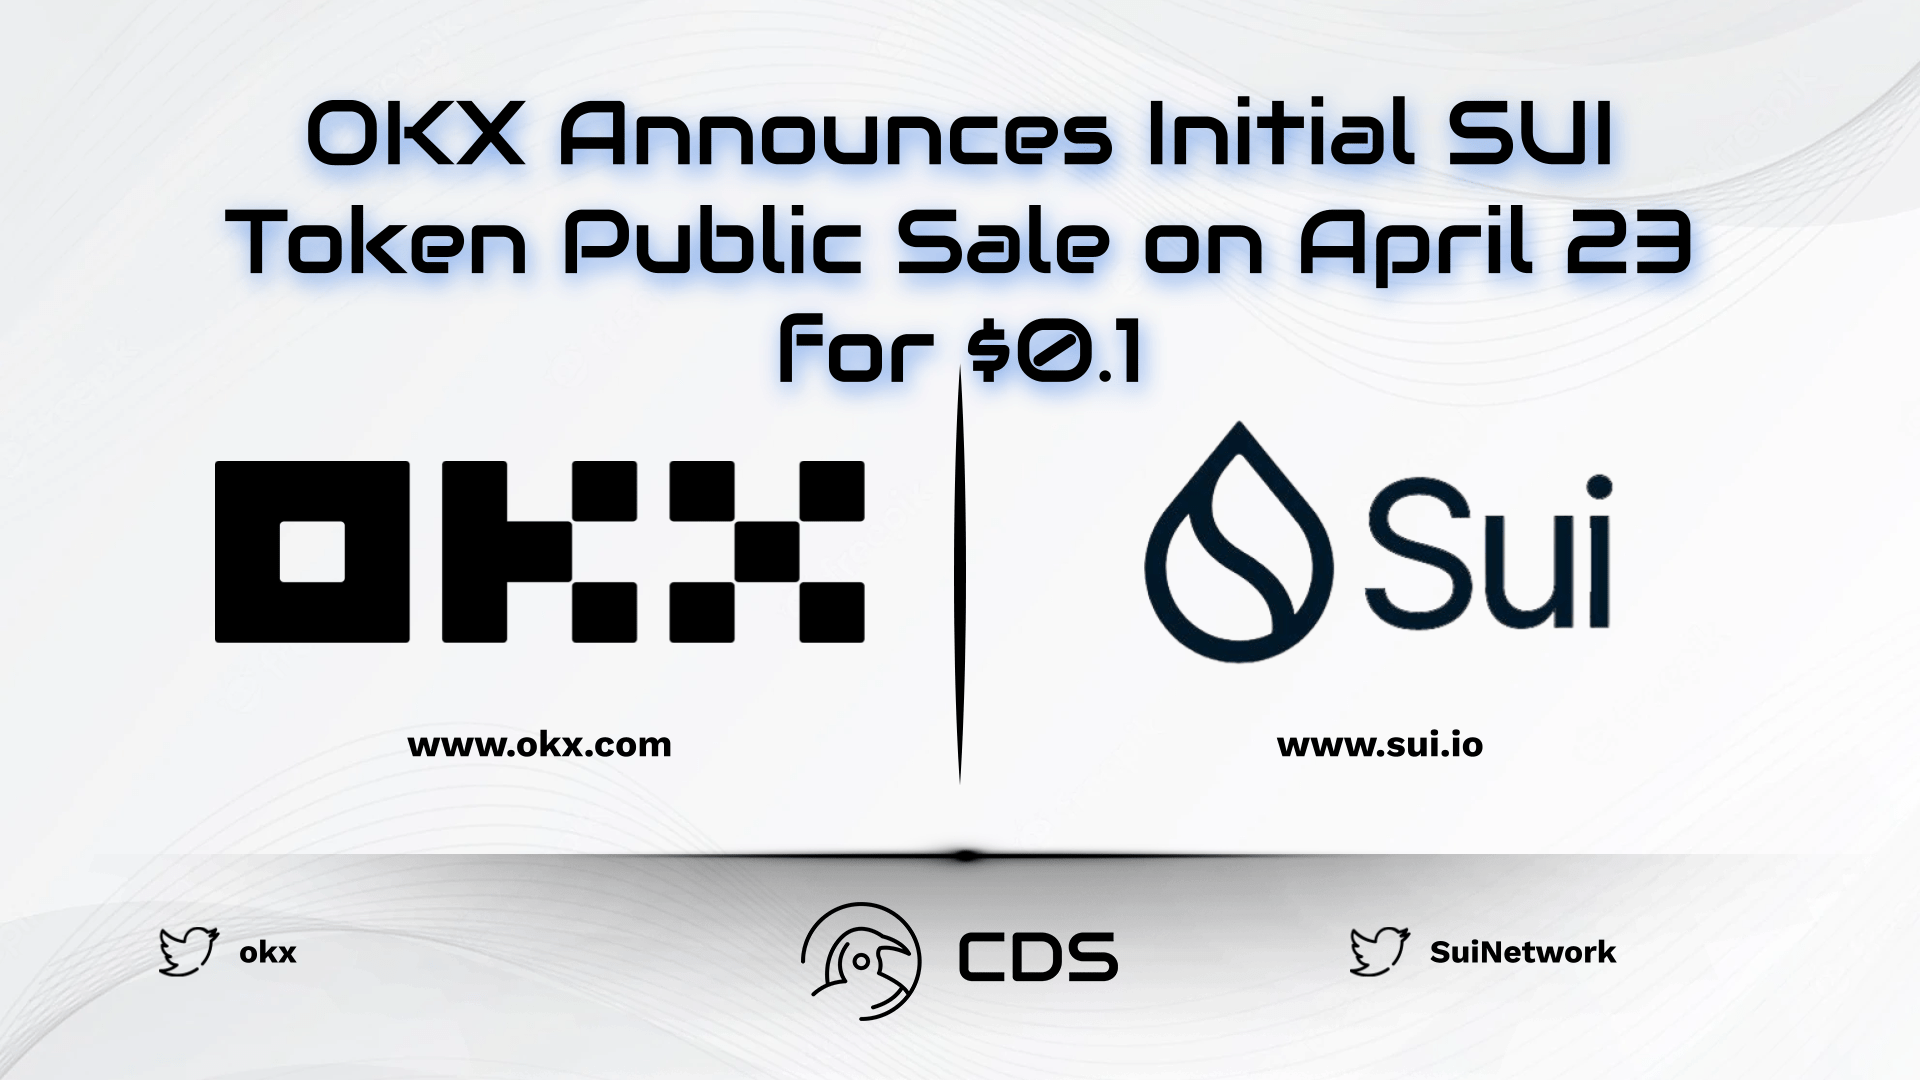 OKX Announces Initial SUI Token Public Sale on April 23 for $0.1